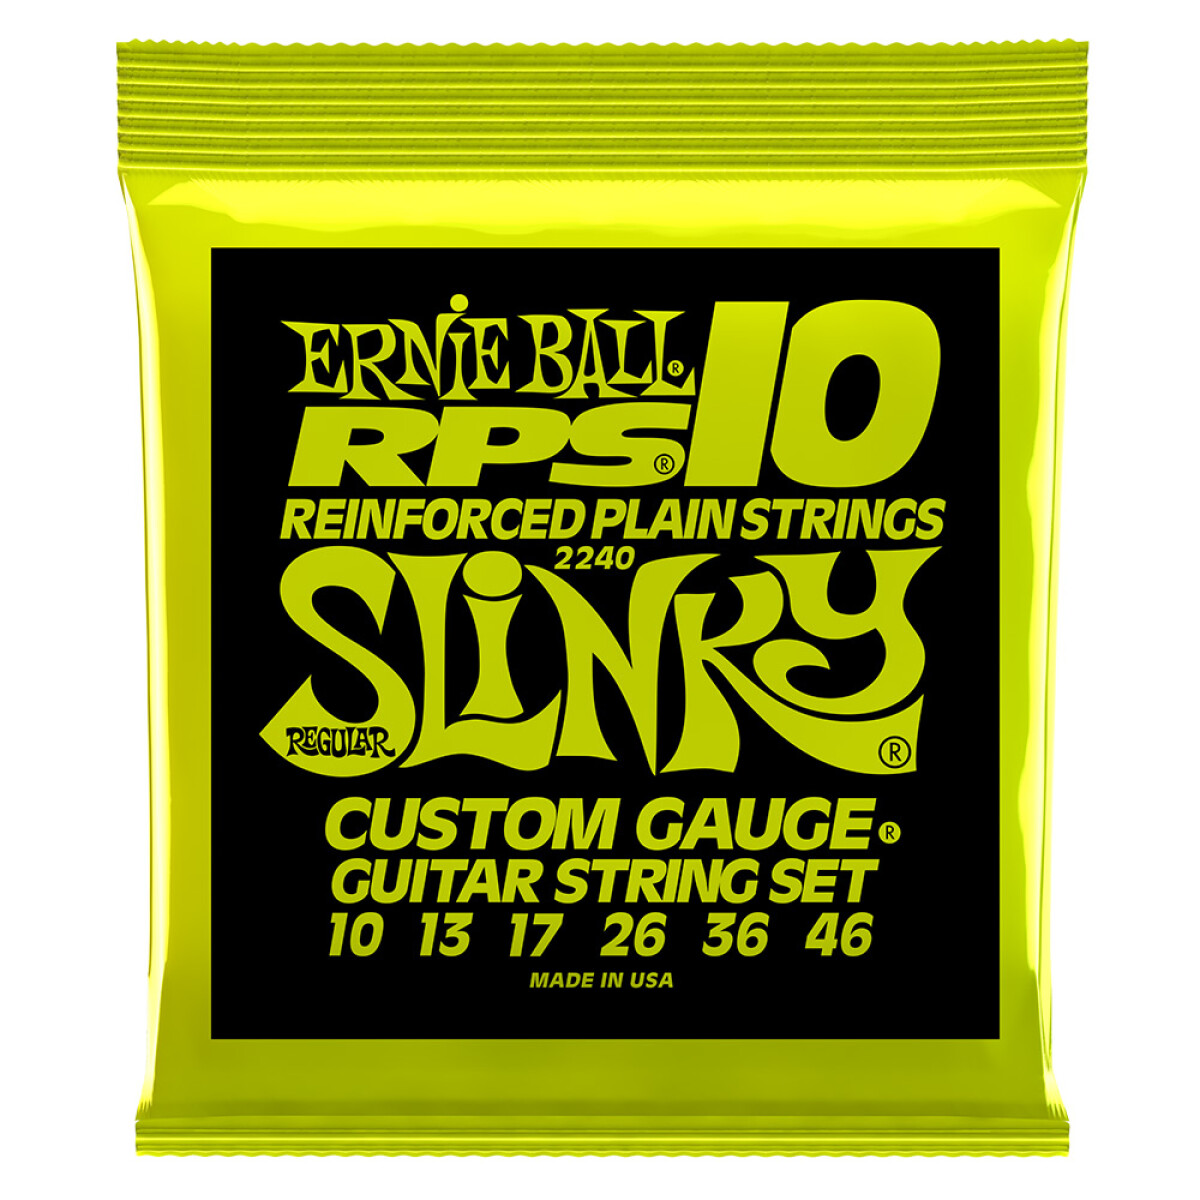 Encordado Eléctrica Ernie Ball Slinky Regular Rps 